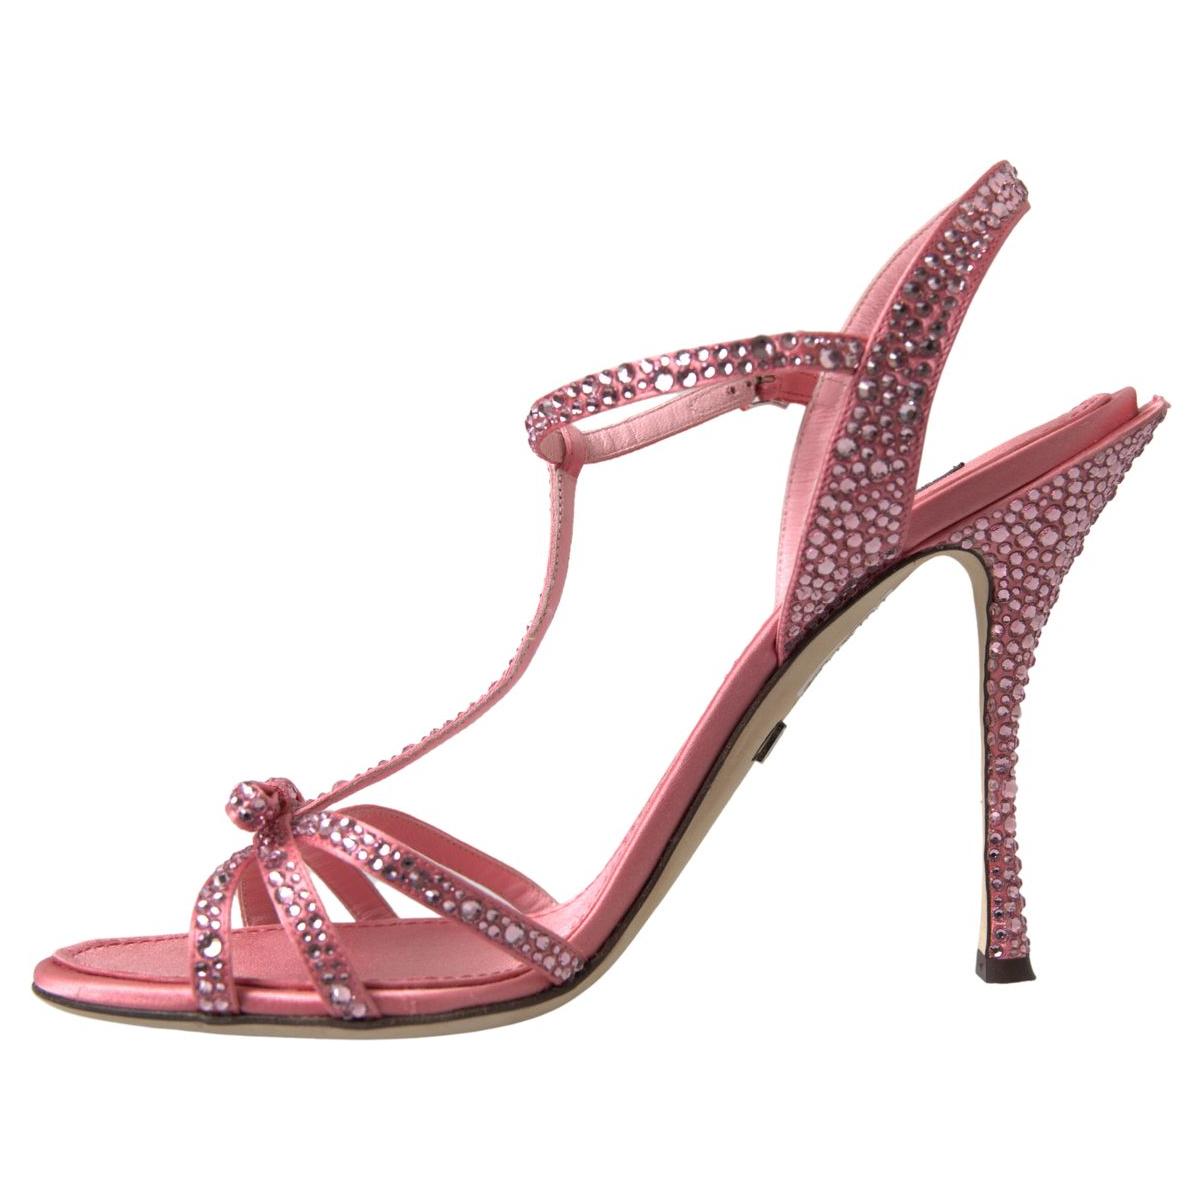 Dolce & Gabbana Elegant Pink Ankle Strap Sandals pink-crystal-ankle-strap-shoes-sandals 465A8845-048e1b47-ef6.jpg